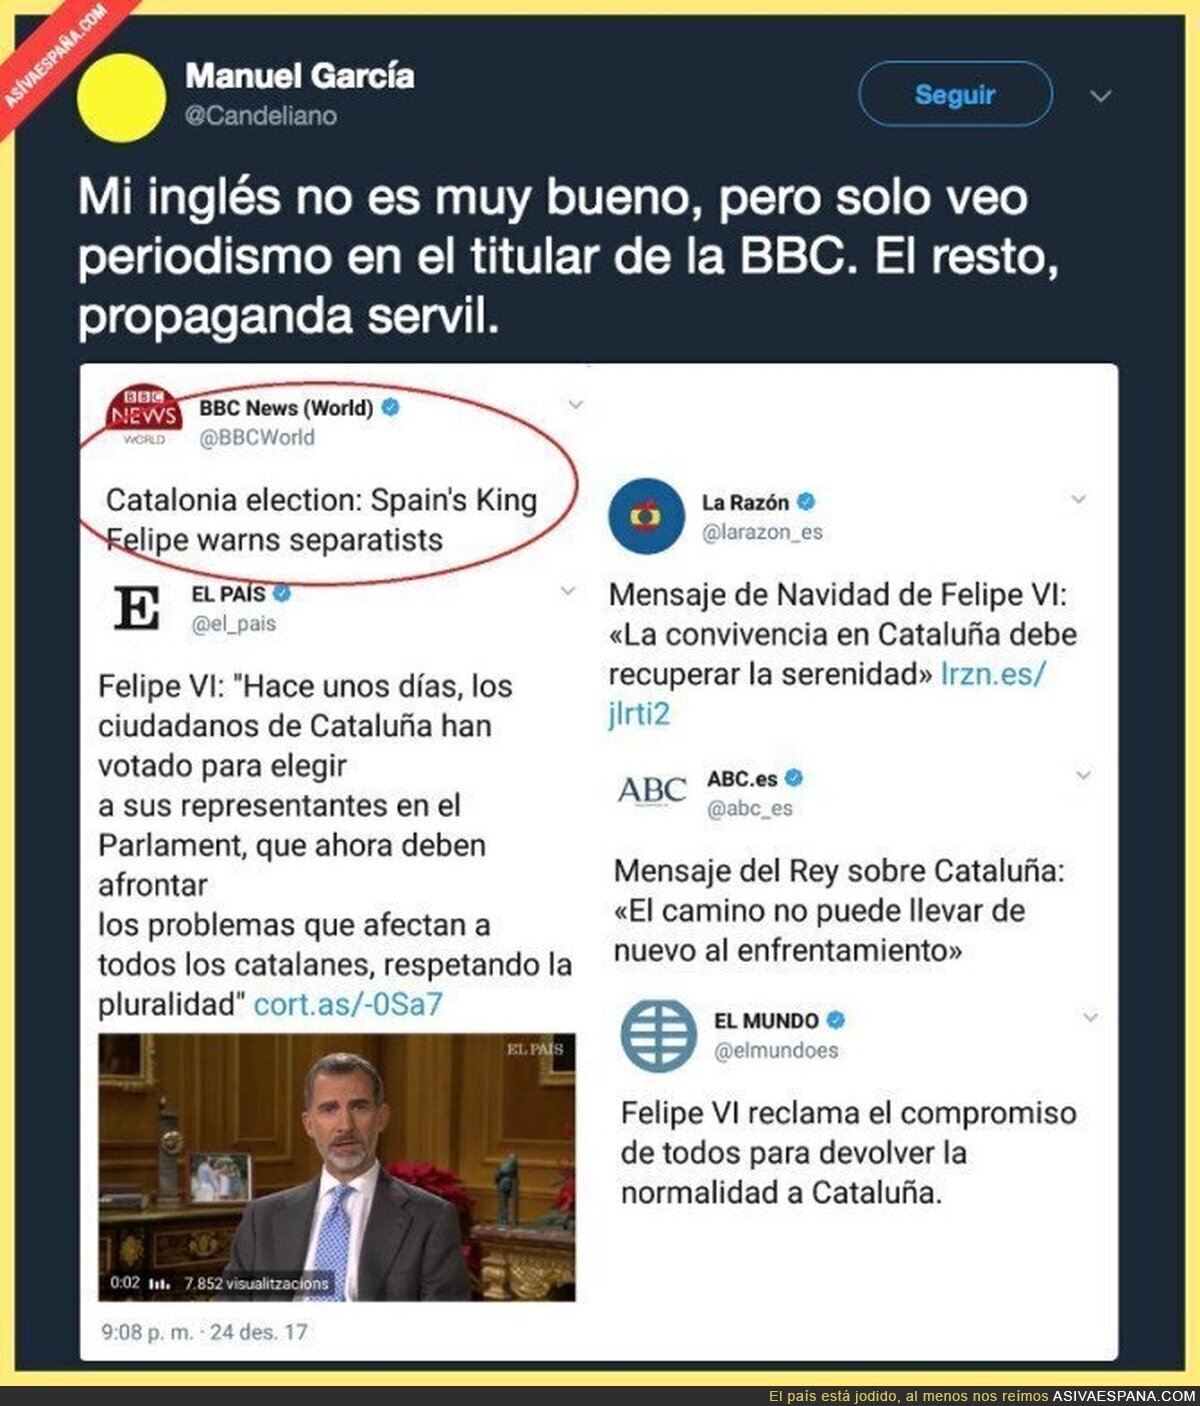 El periodismo de España contra el de la BBC